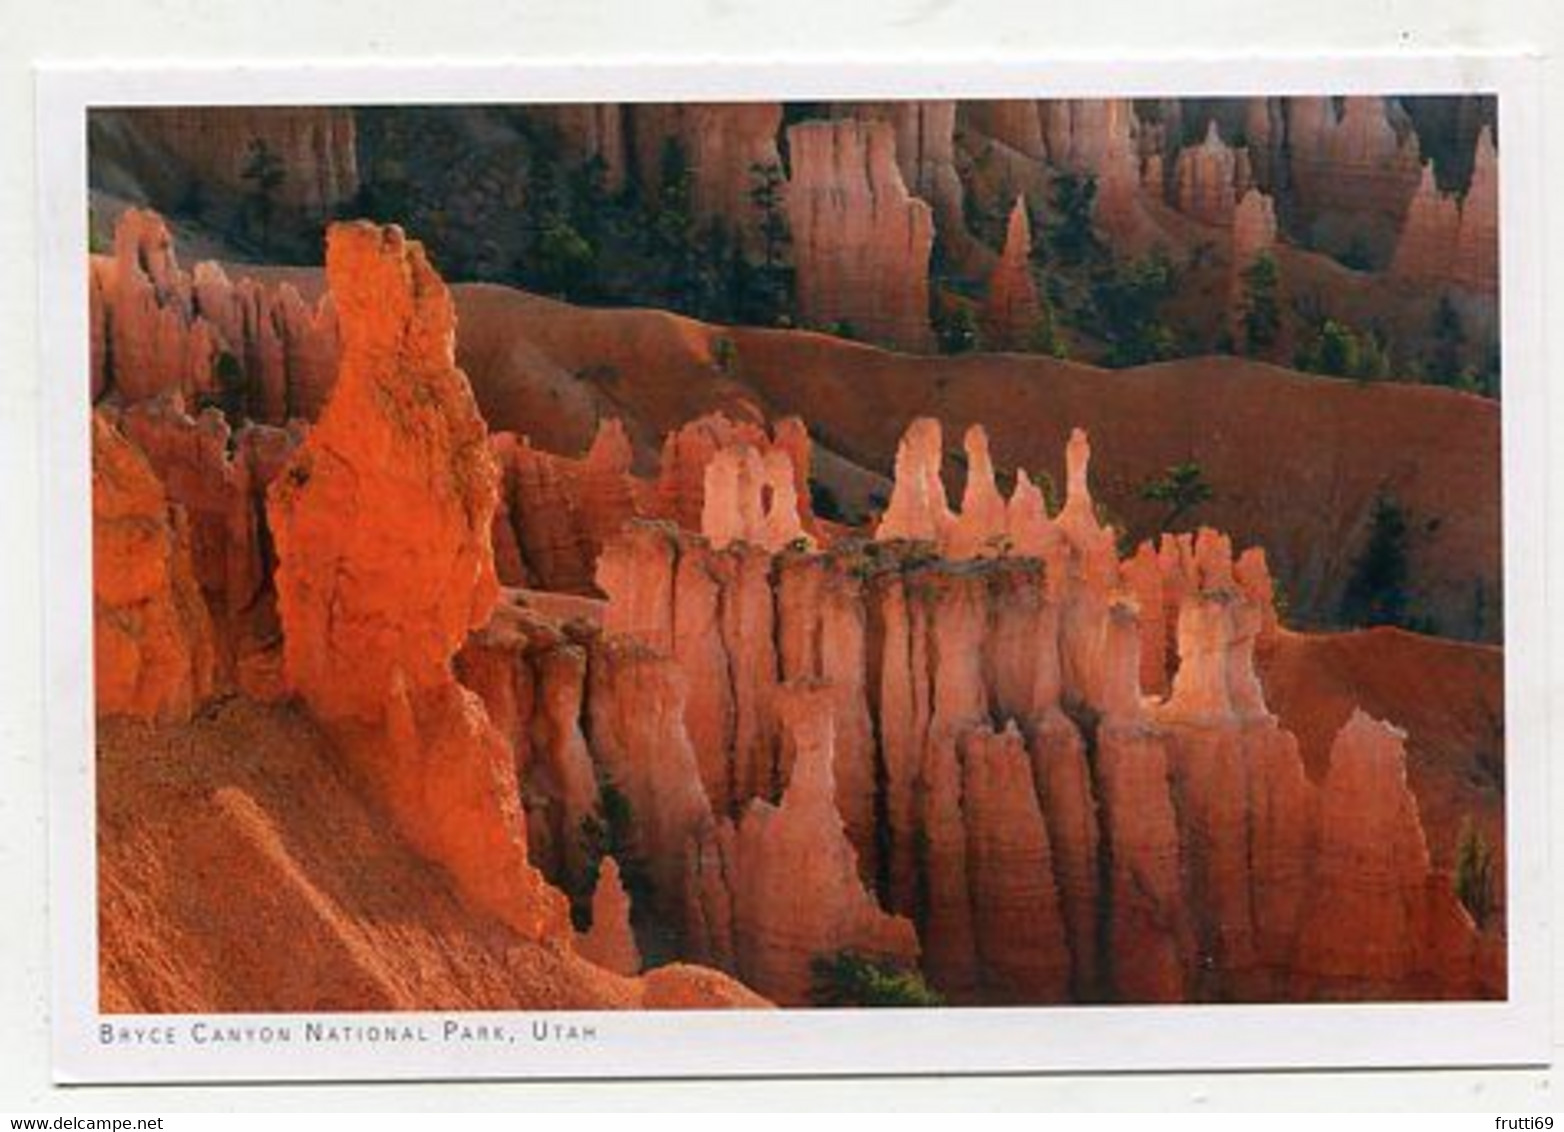 AK 072644 USA - Utah - Bryce Canyon National Park - Bryce Canyon